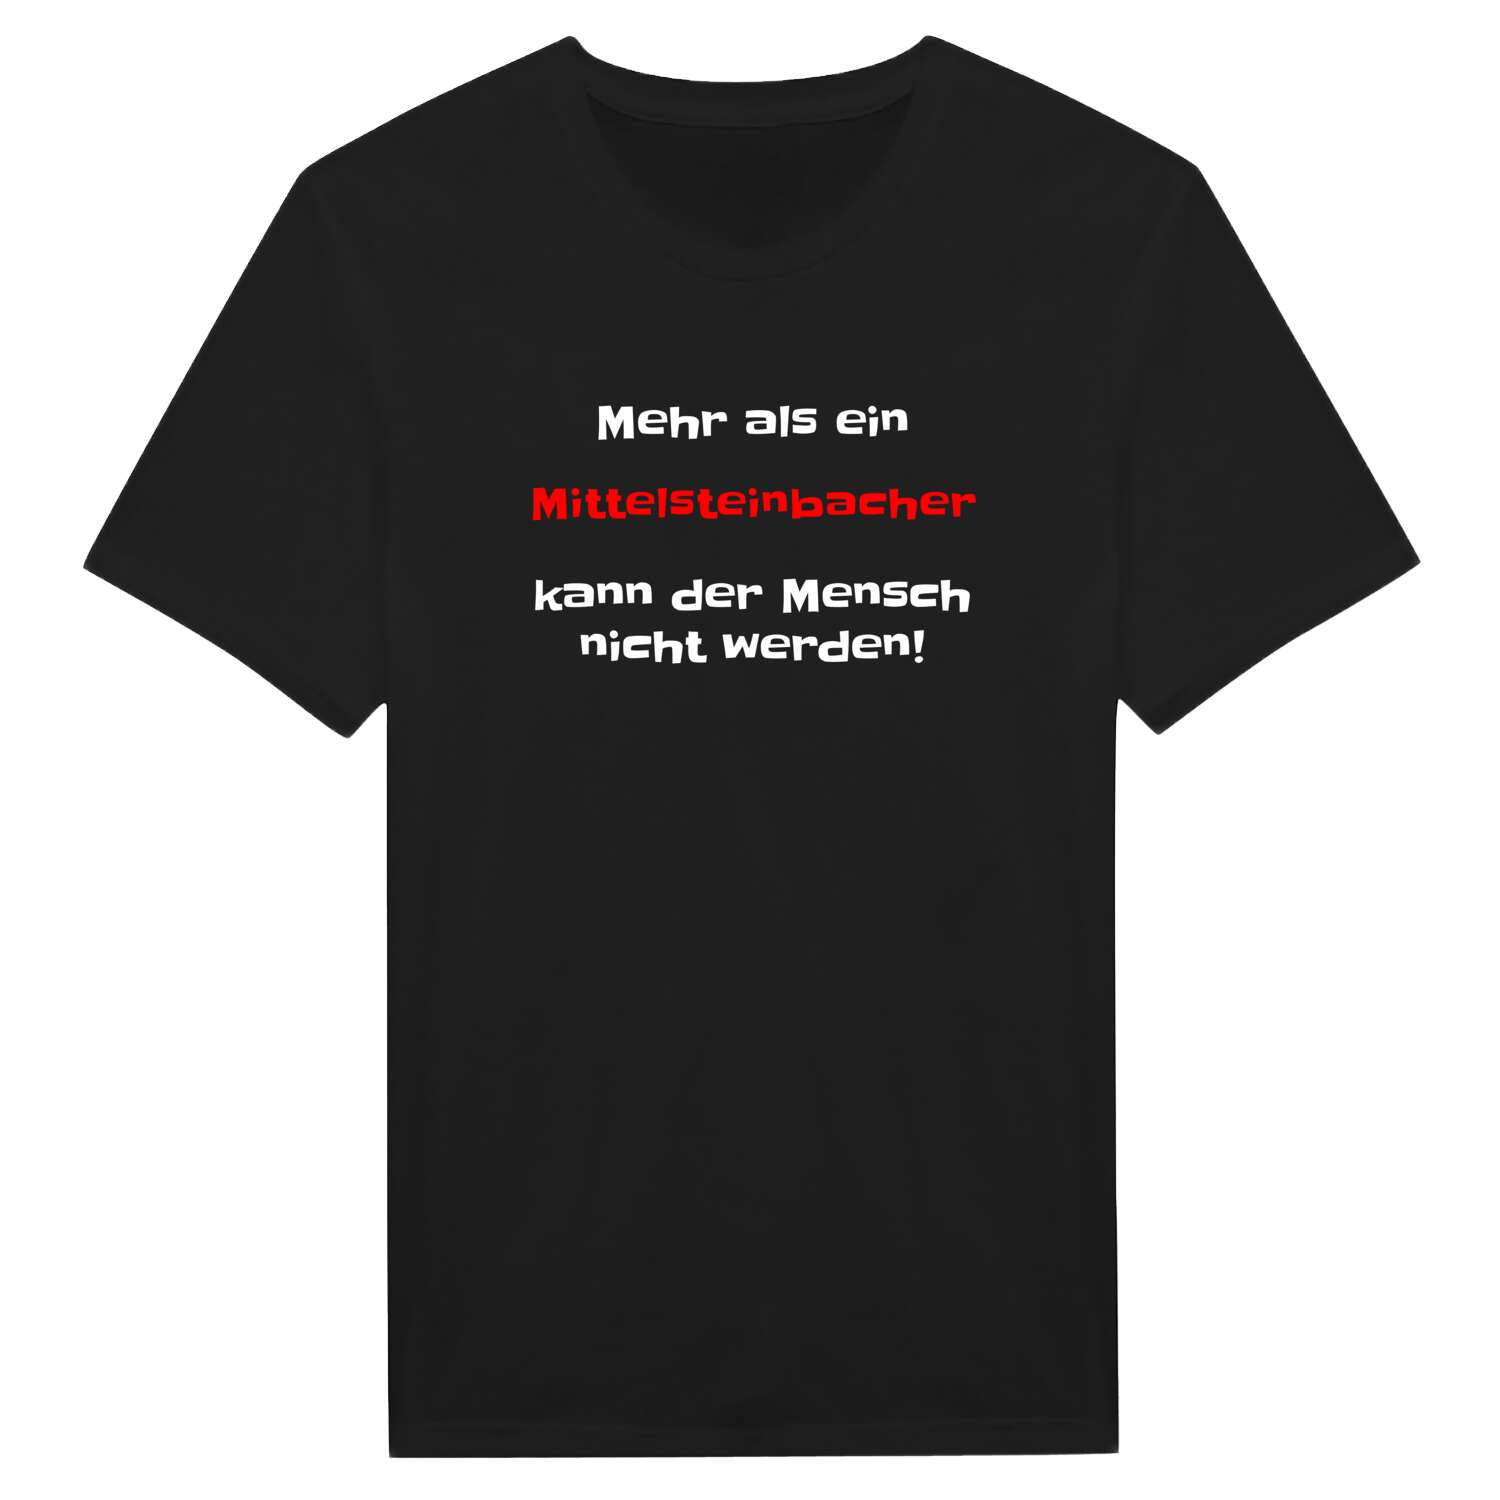 Mittelsteinbach T-Shirt »Mehr als ein«